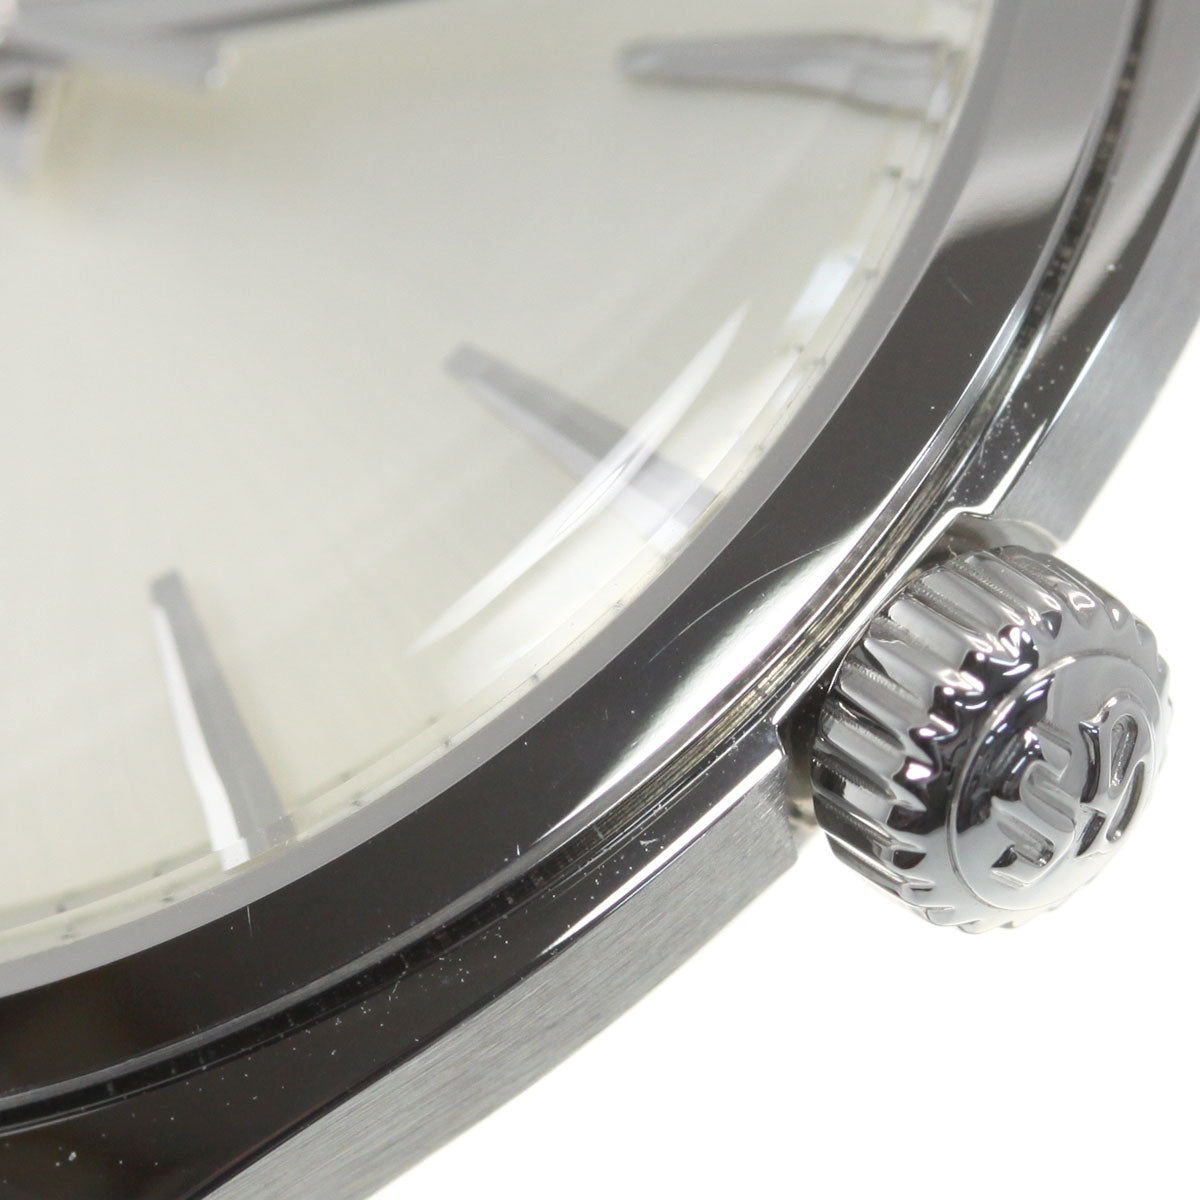 【36回分割手数料無料！】グランドセイコー GRAND SEIKO 腕時計 ペアモデル メンズ SBGX331 エレガンス Elegance Collection SBGX331【正規品】